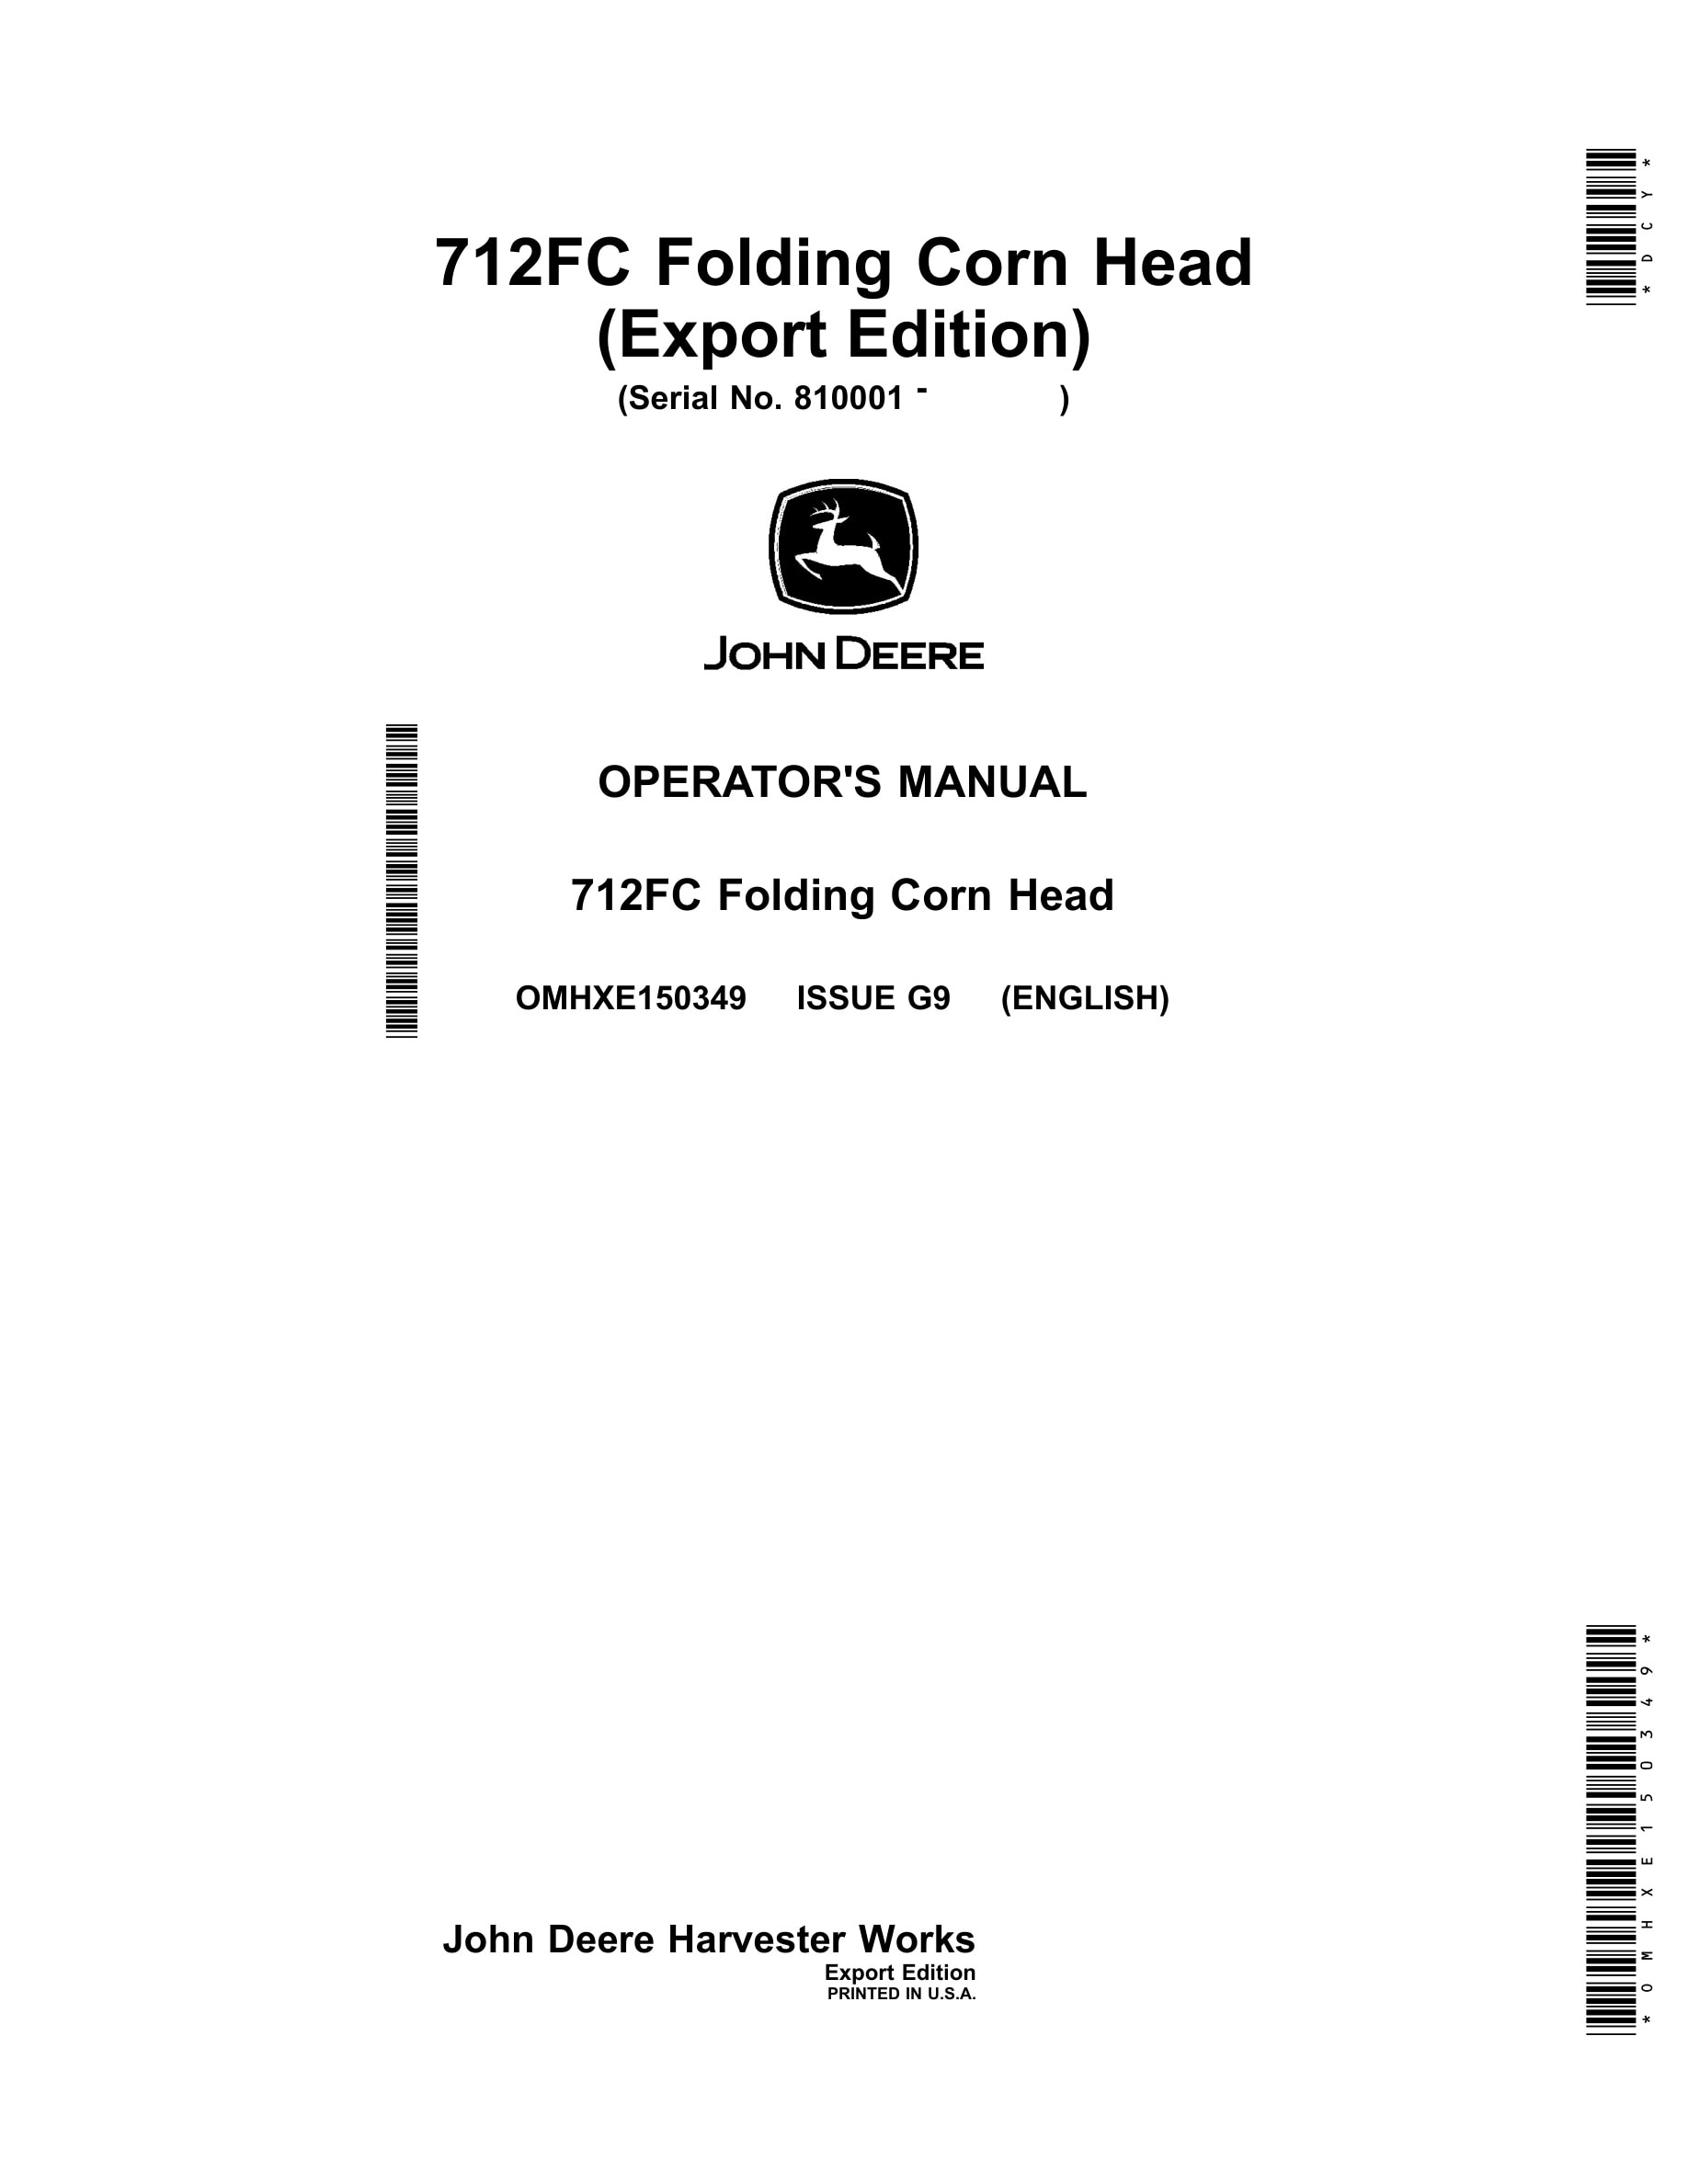 John Deere 712FC Folding Corn Head Operator Manual OMHXE150349-1